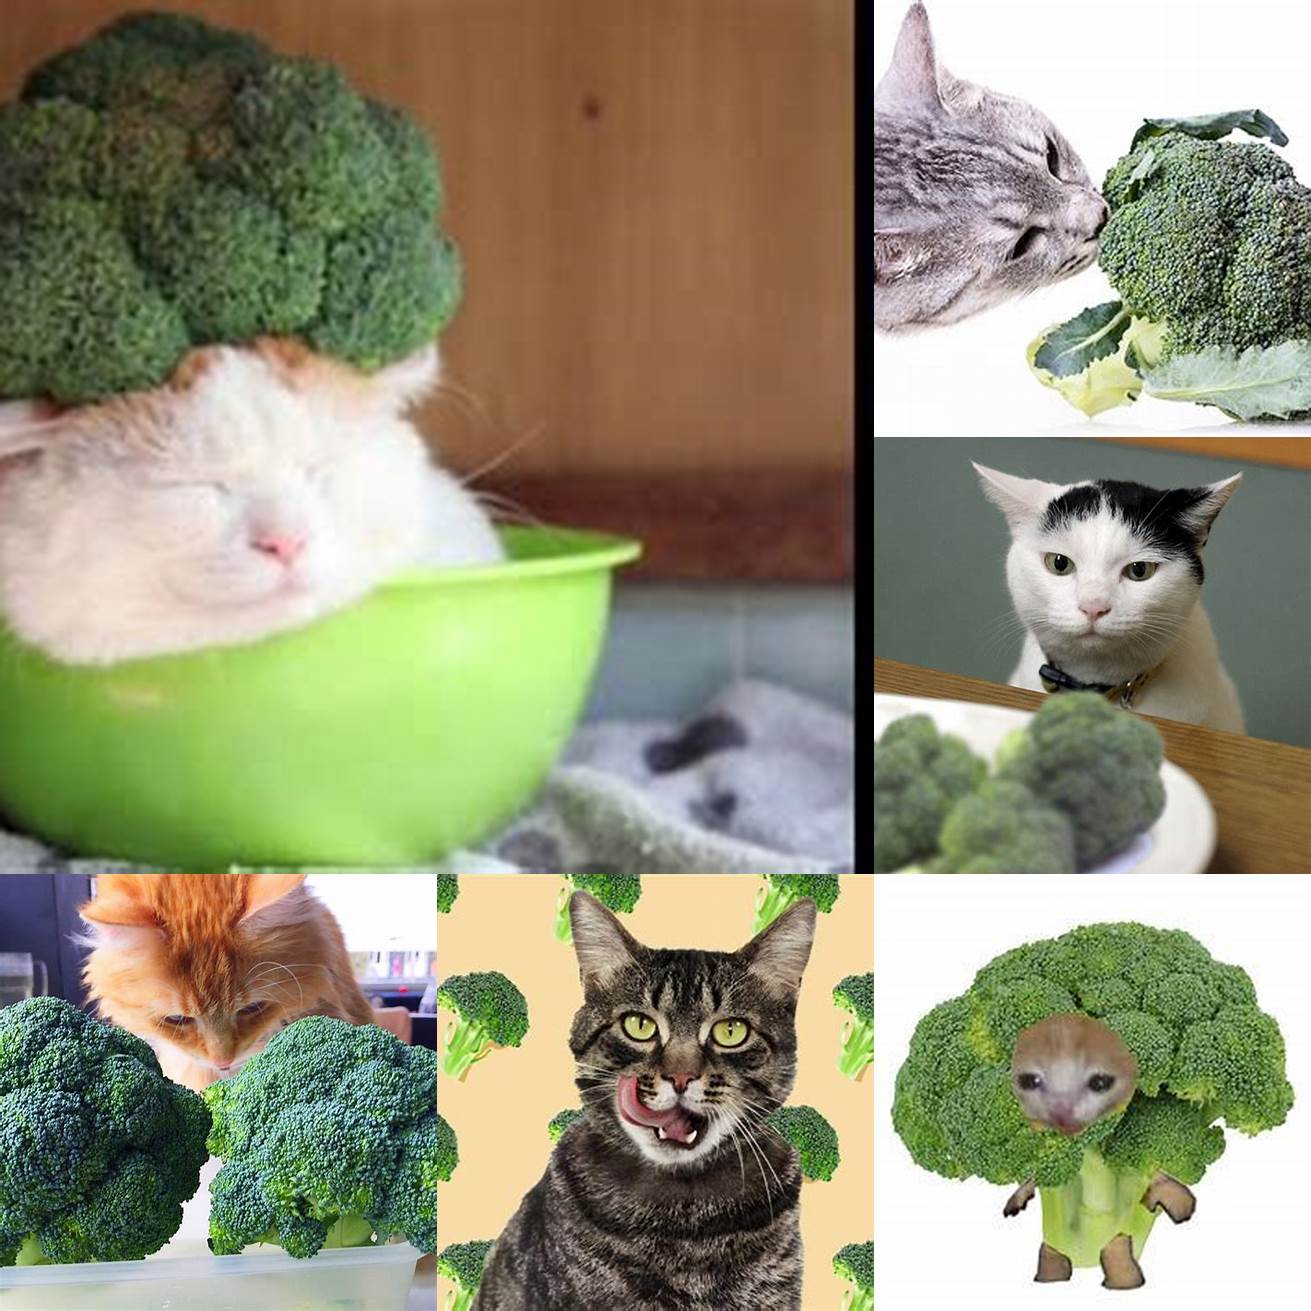 Image Idea 1 Broccoli